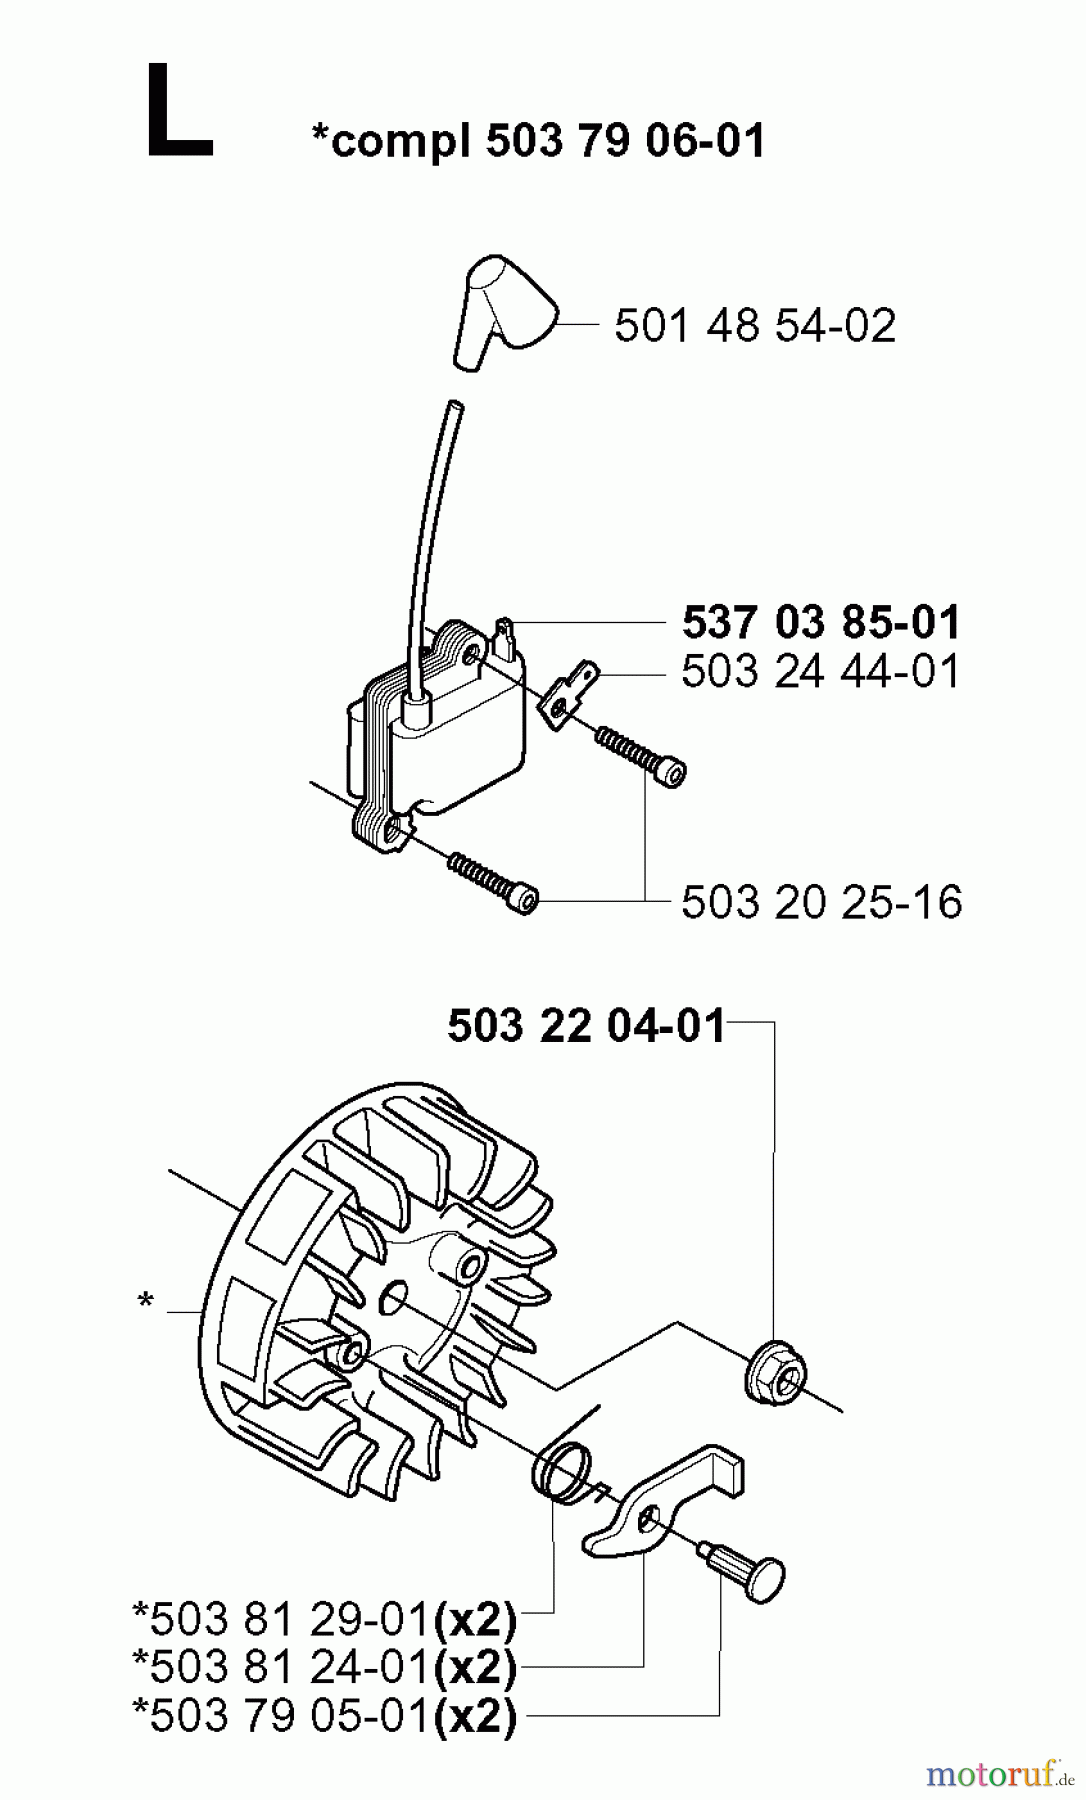  Jonsered Motorsensen, Trimmer GR2032 - Jonsered String/Brush Trimmer (2000-10) IGNITION SYSTEM